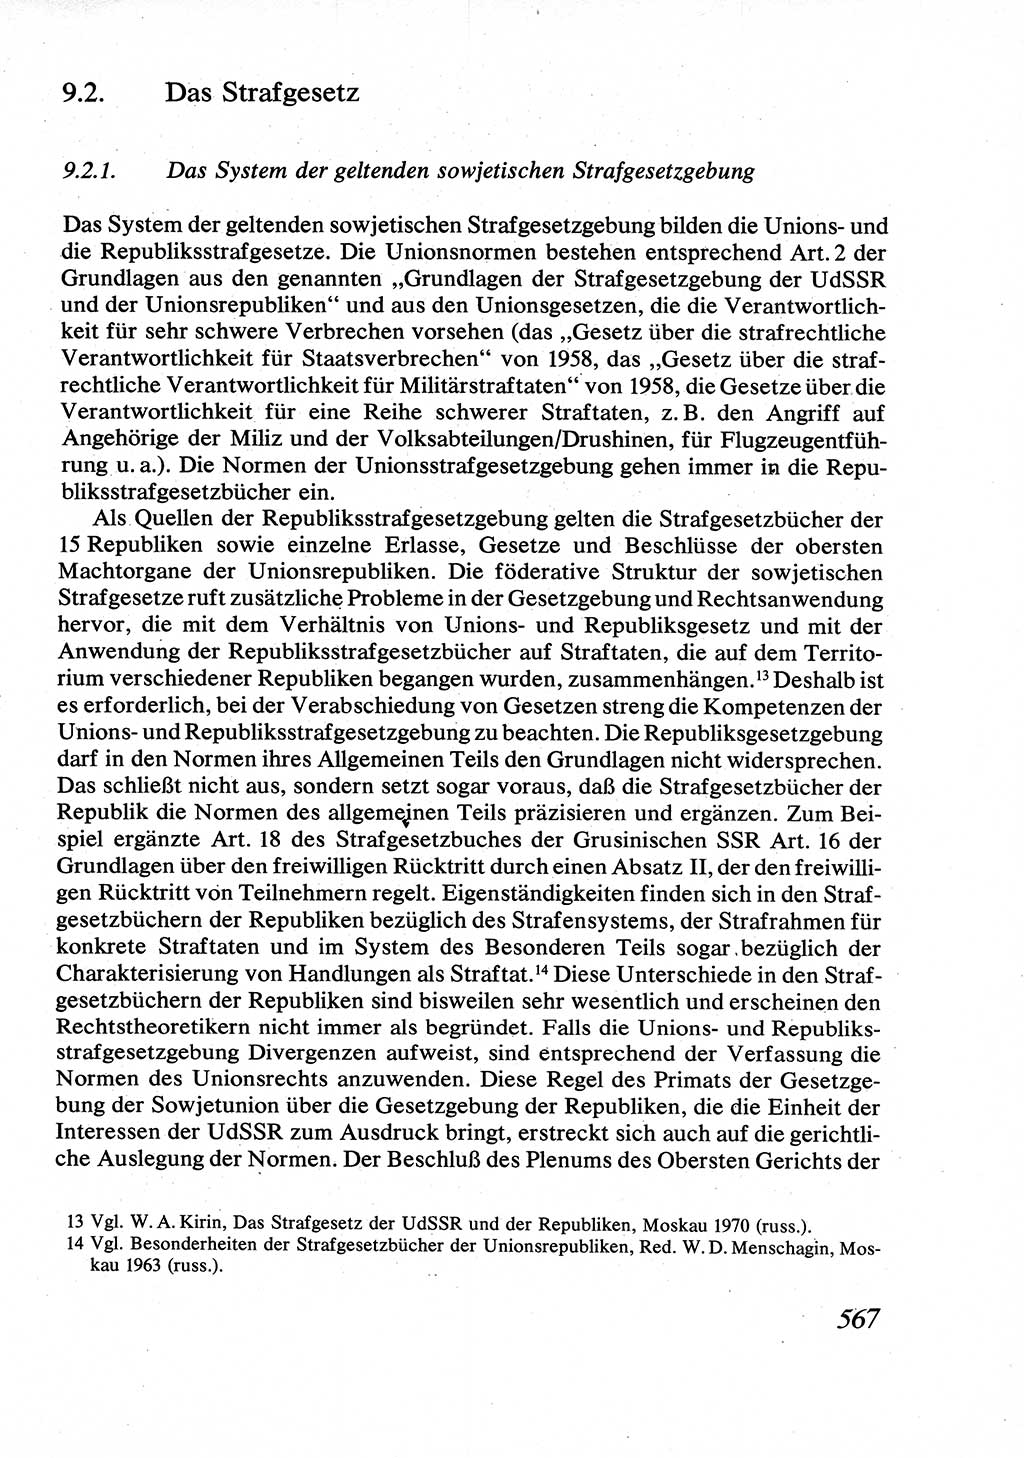 Strafrecht [Deutsche Demokratische Republik (DDR)], Allgemeiner Teil, Lehrbuch 1976, Seite 567 (Strafr. DDR AT Lb. 1976, S. 567)